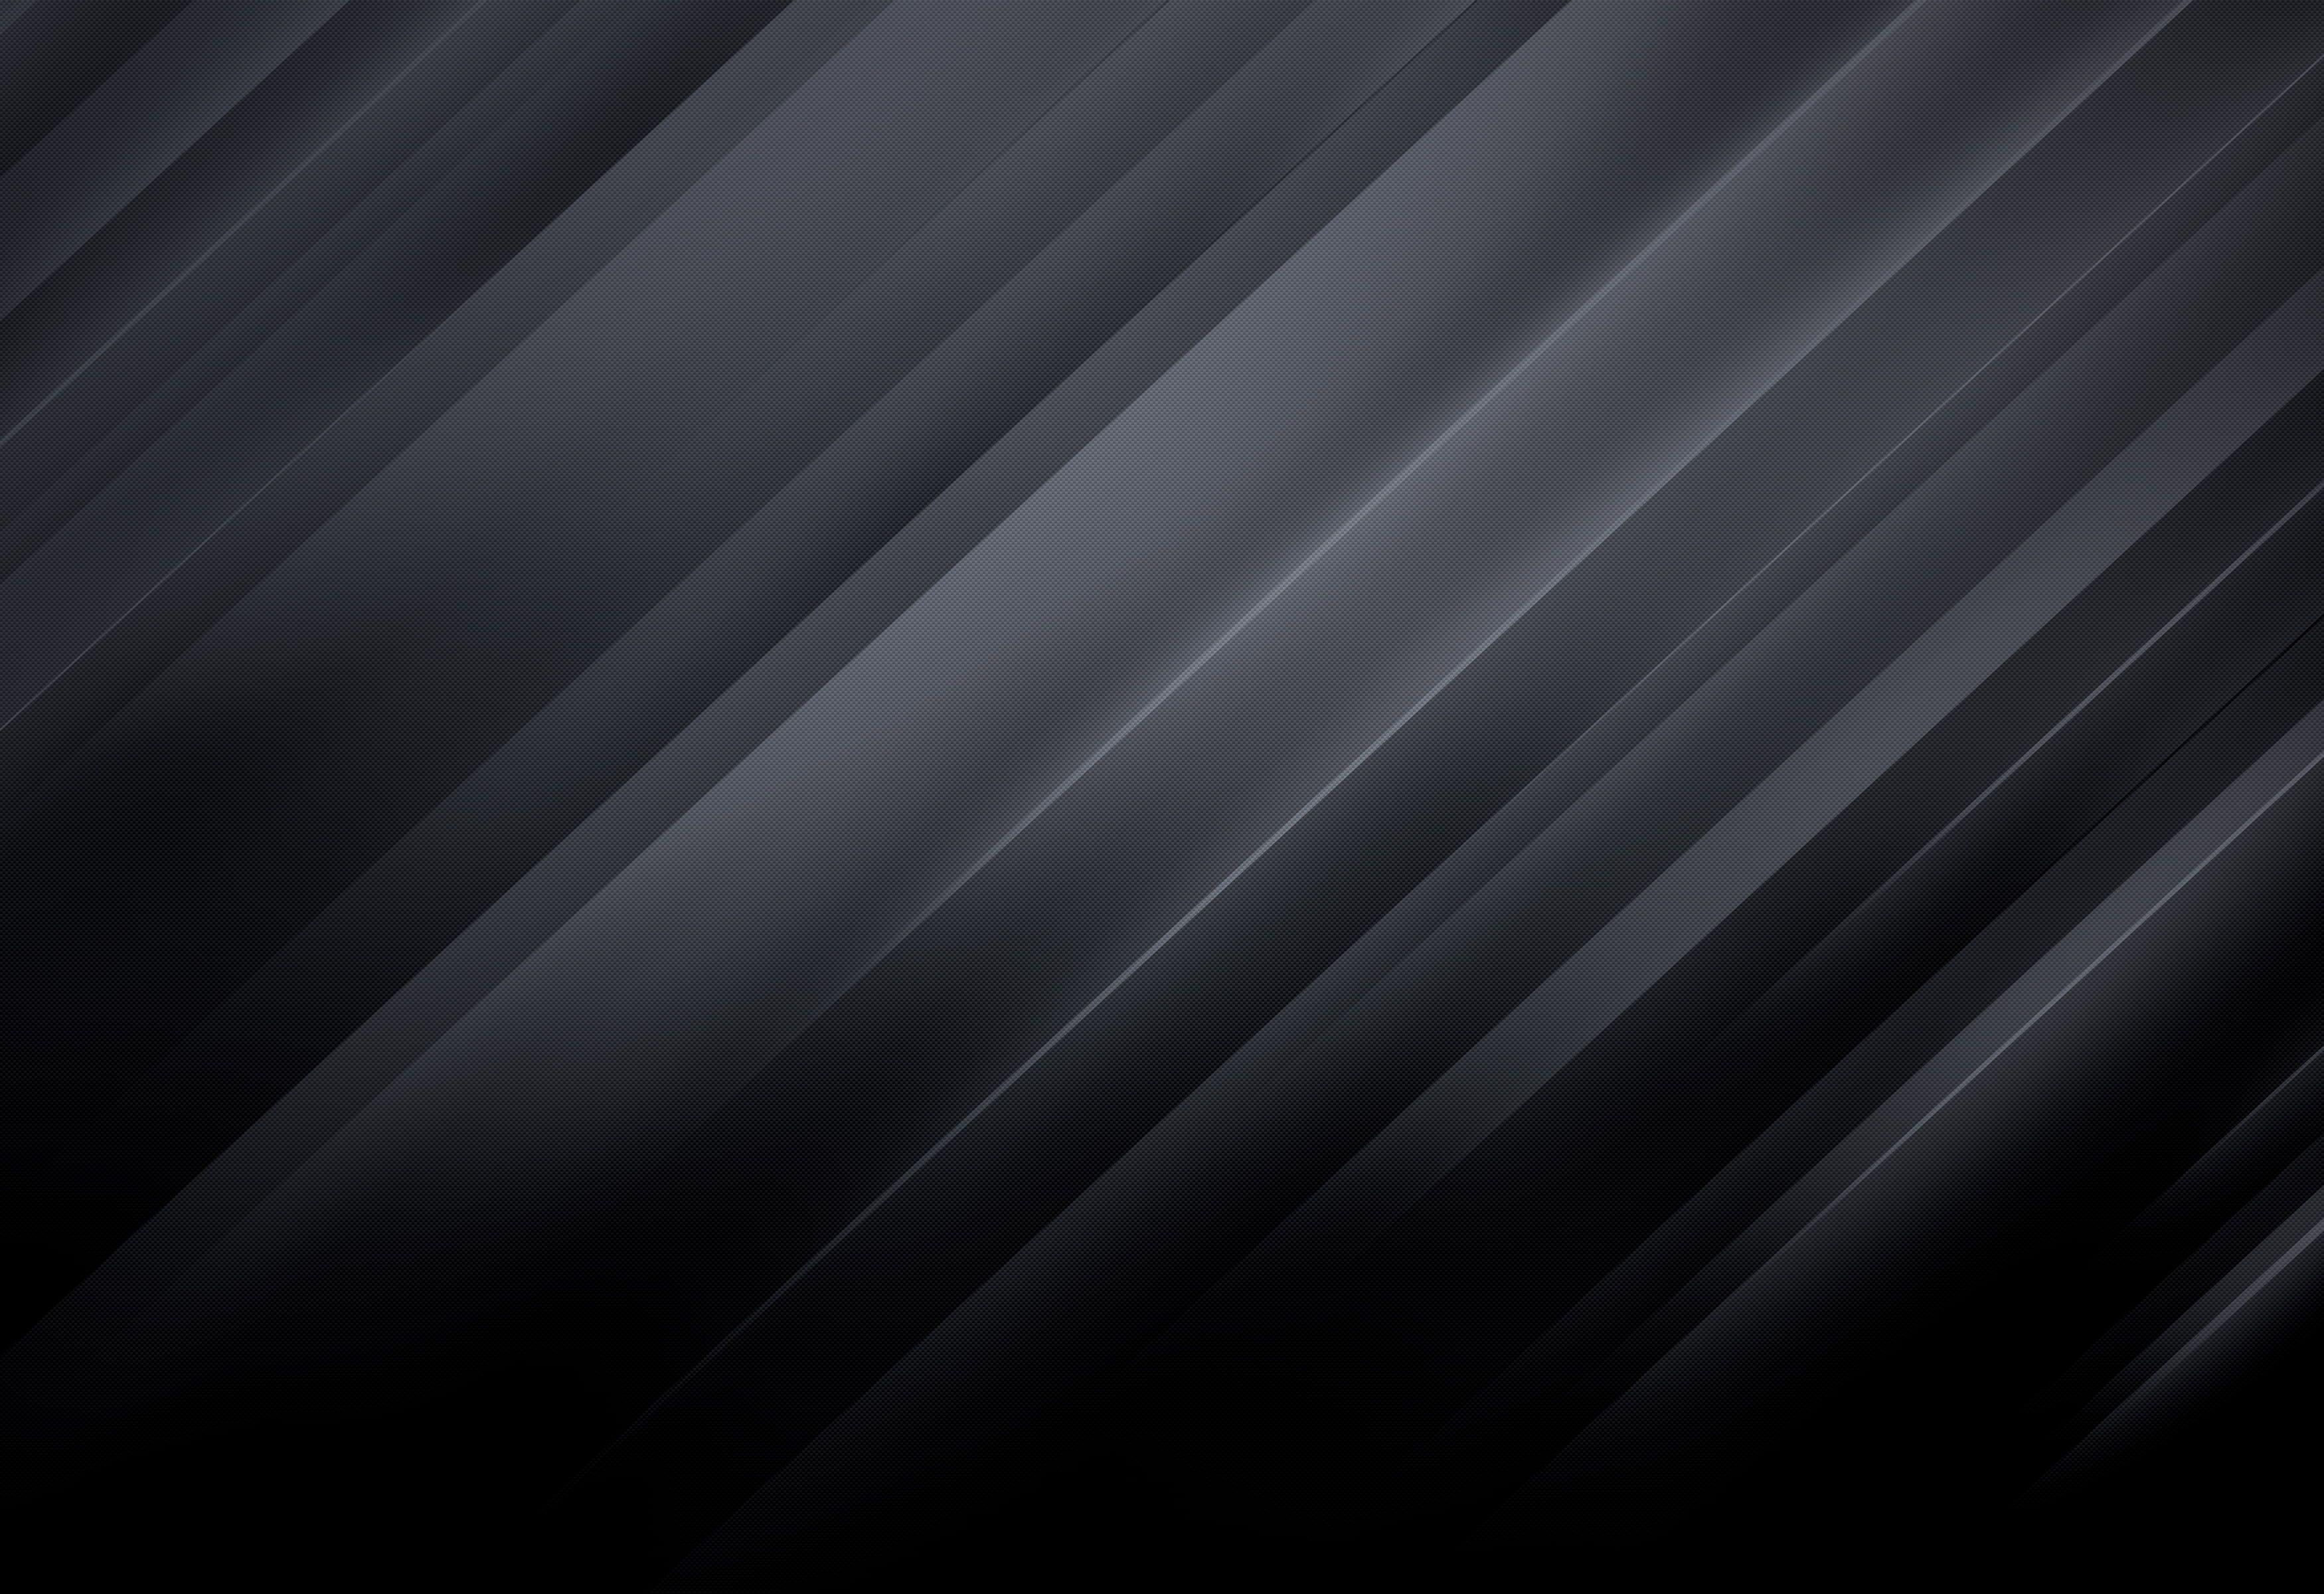 4K Dark Texture Wallpapers - Top Free 4K Dark Texture Backgrounds ...